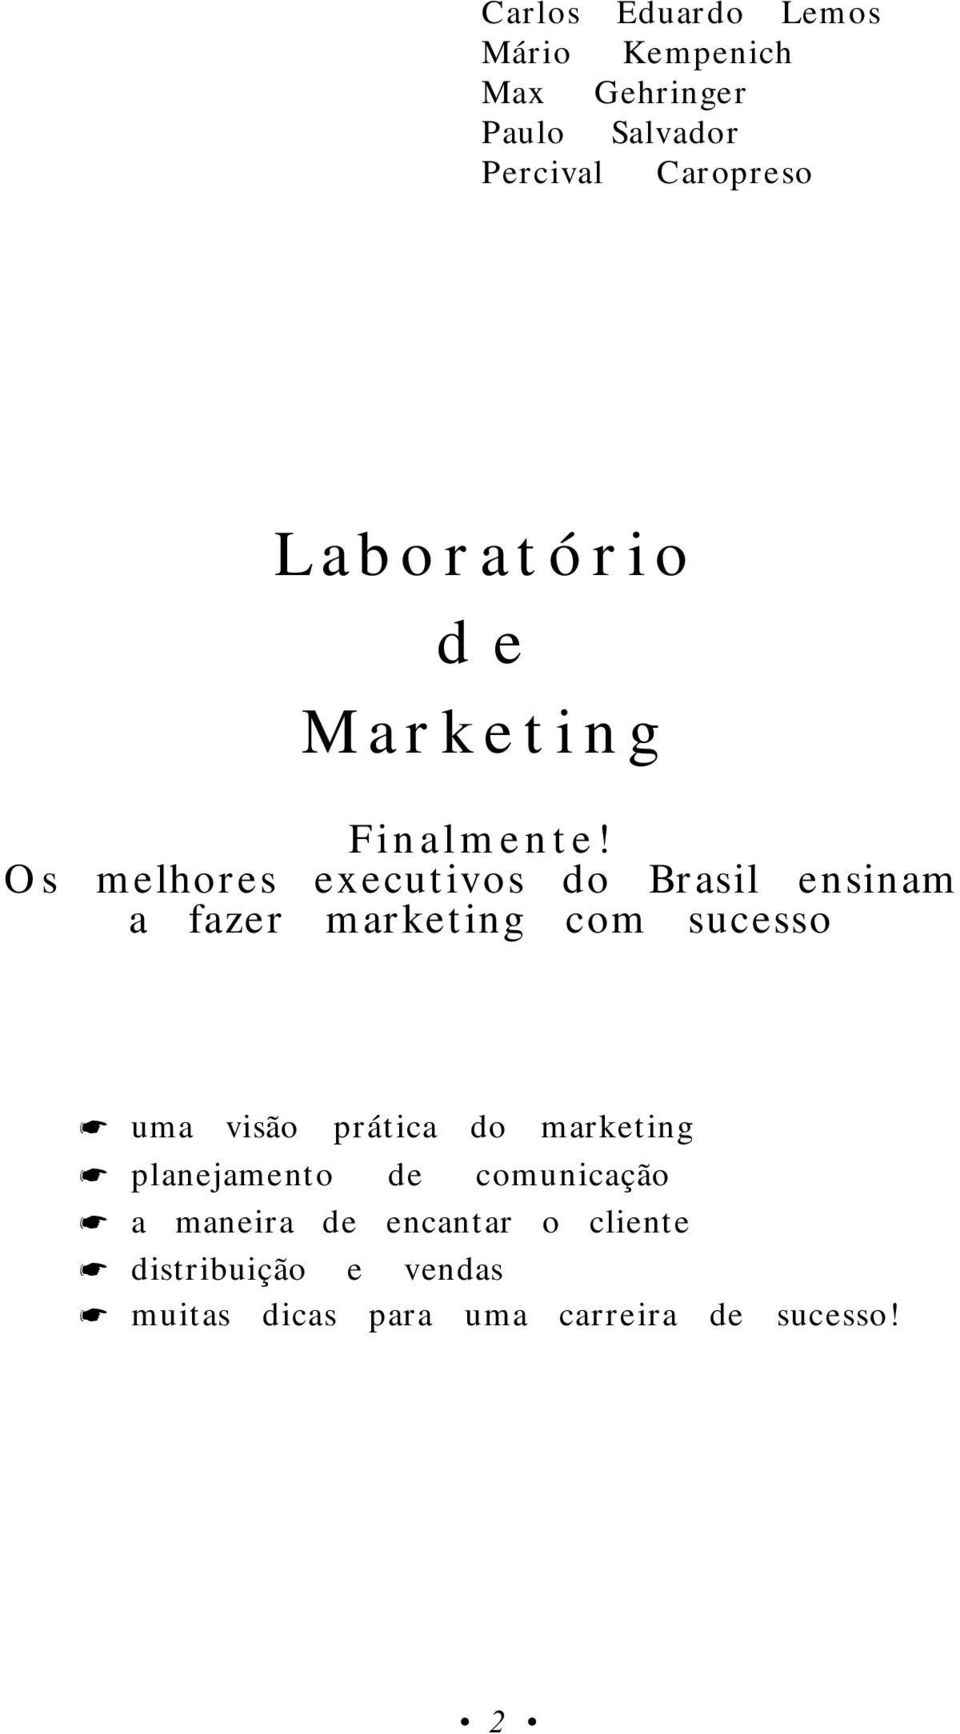 Os melhores executivos do Brasil ensinam a fazer marketing com sucesso!